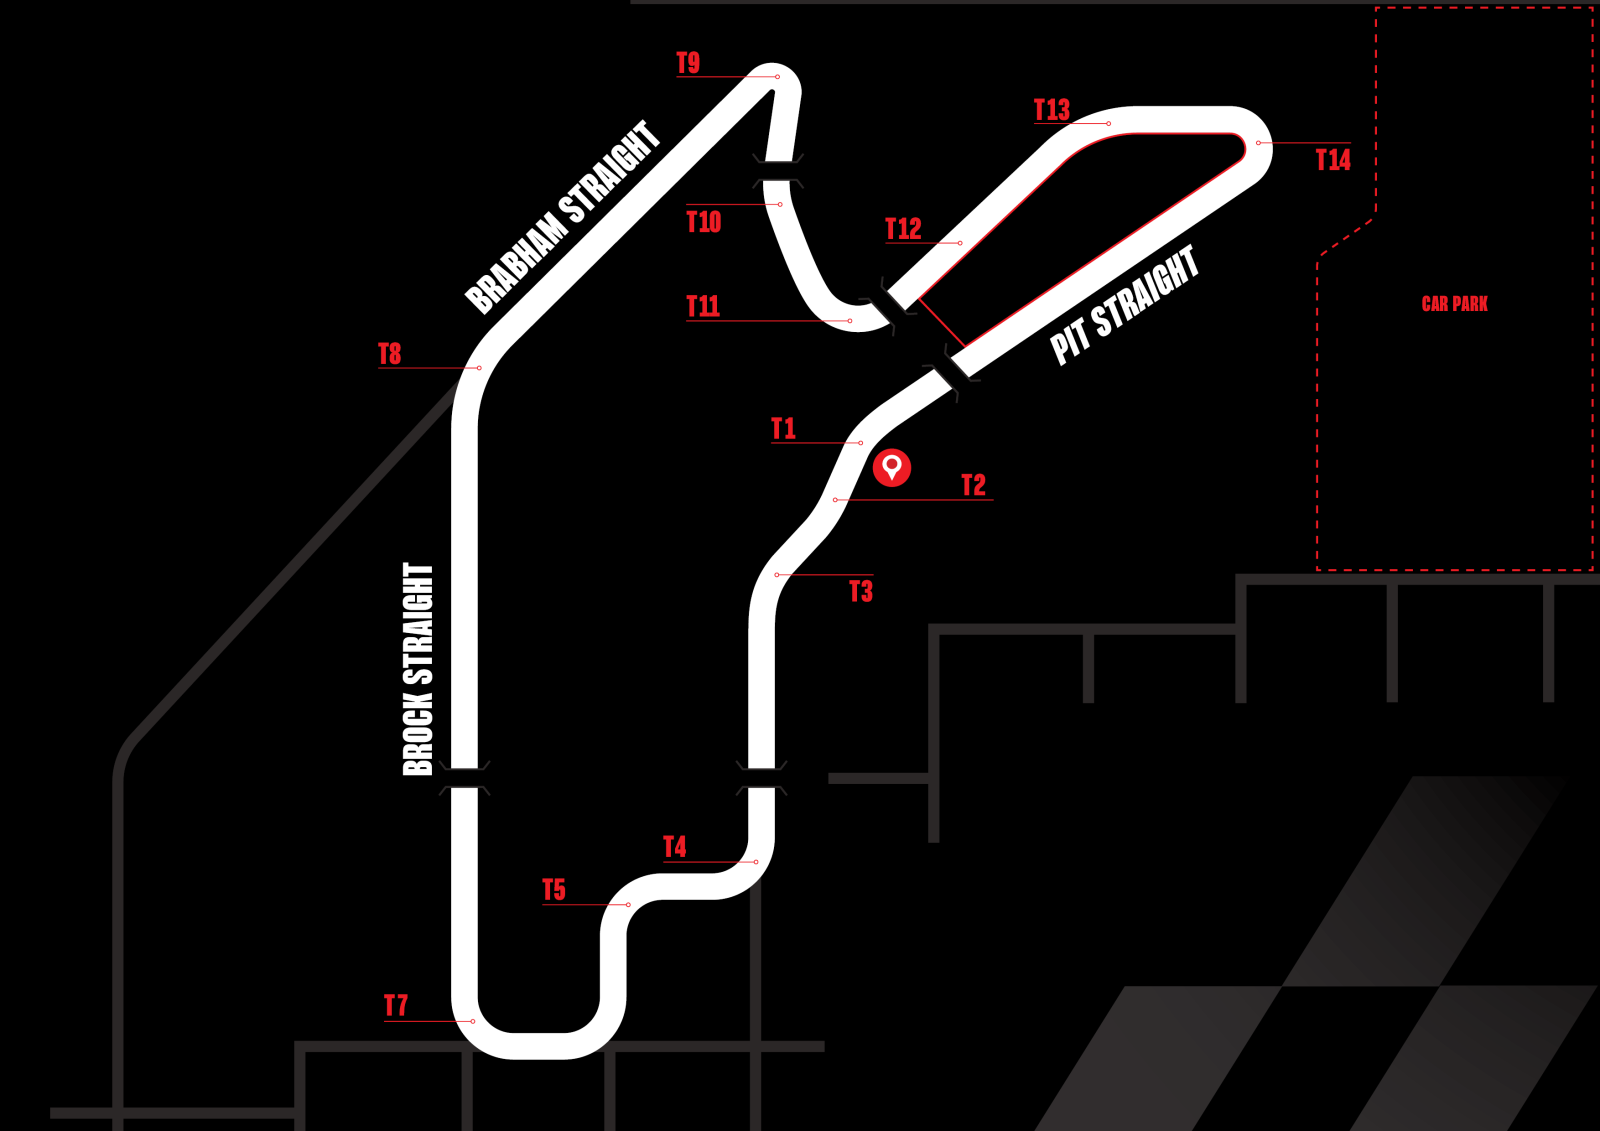 Senna Villa track location map